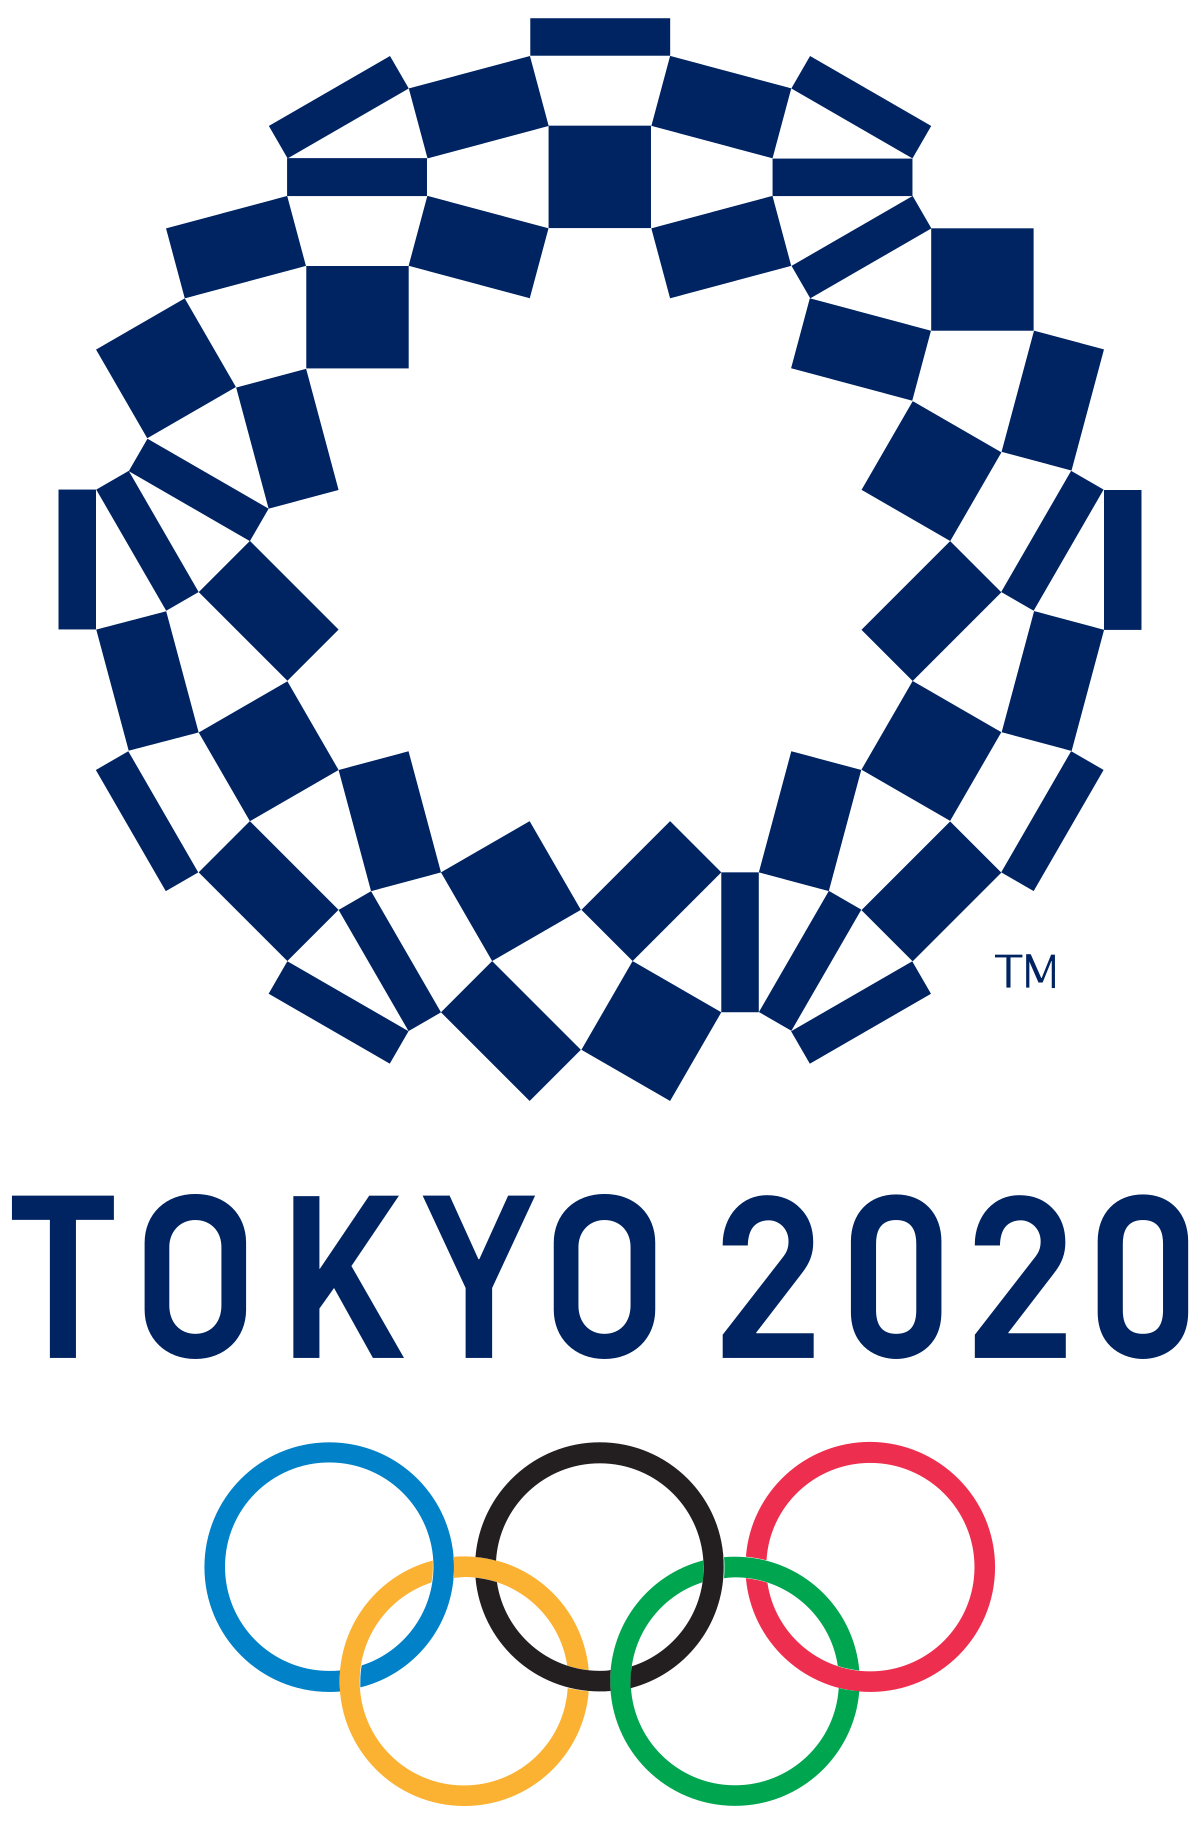 Toquio 2020